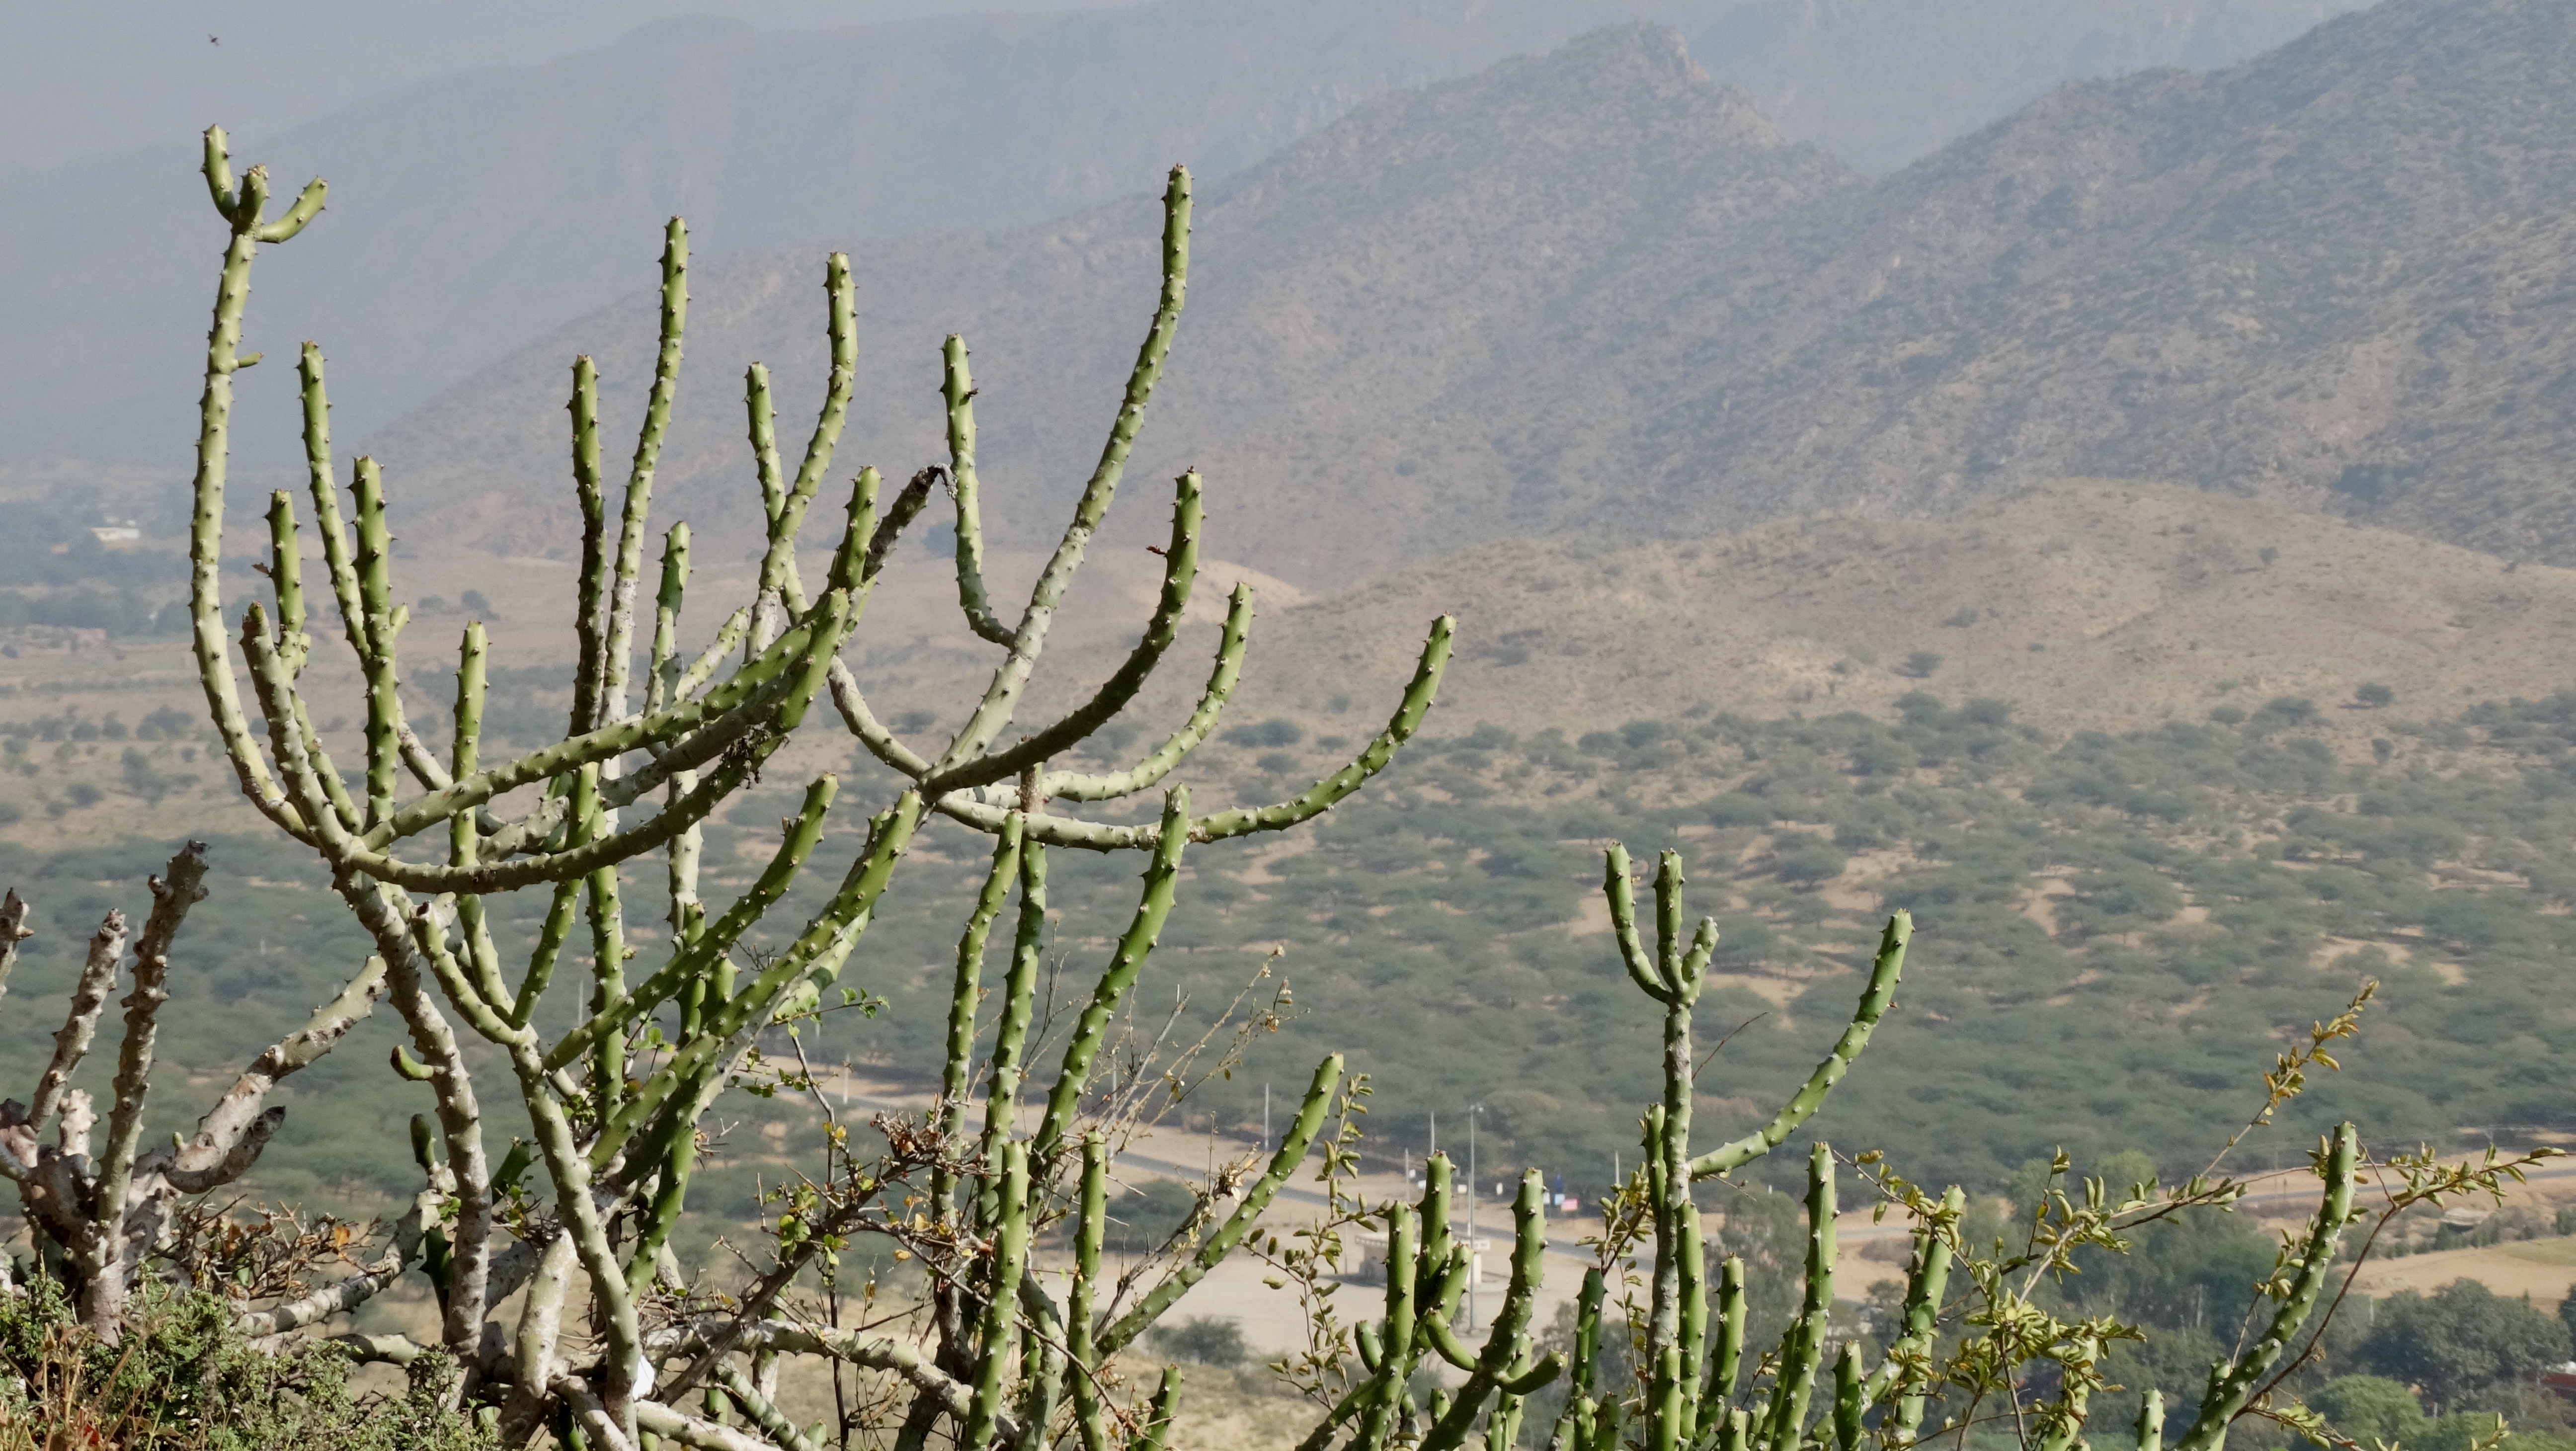 Cactus macro near Ajmer